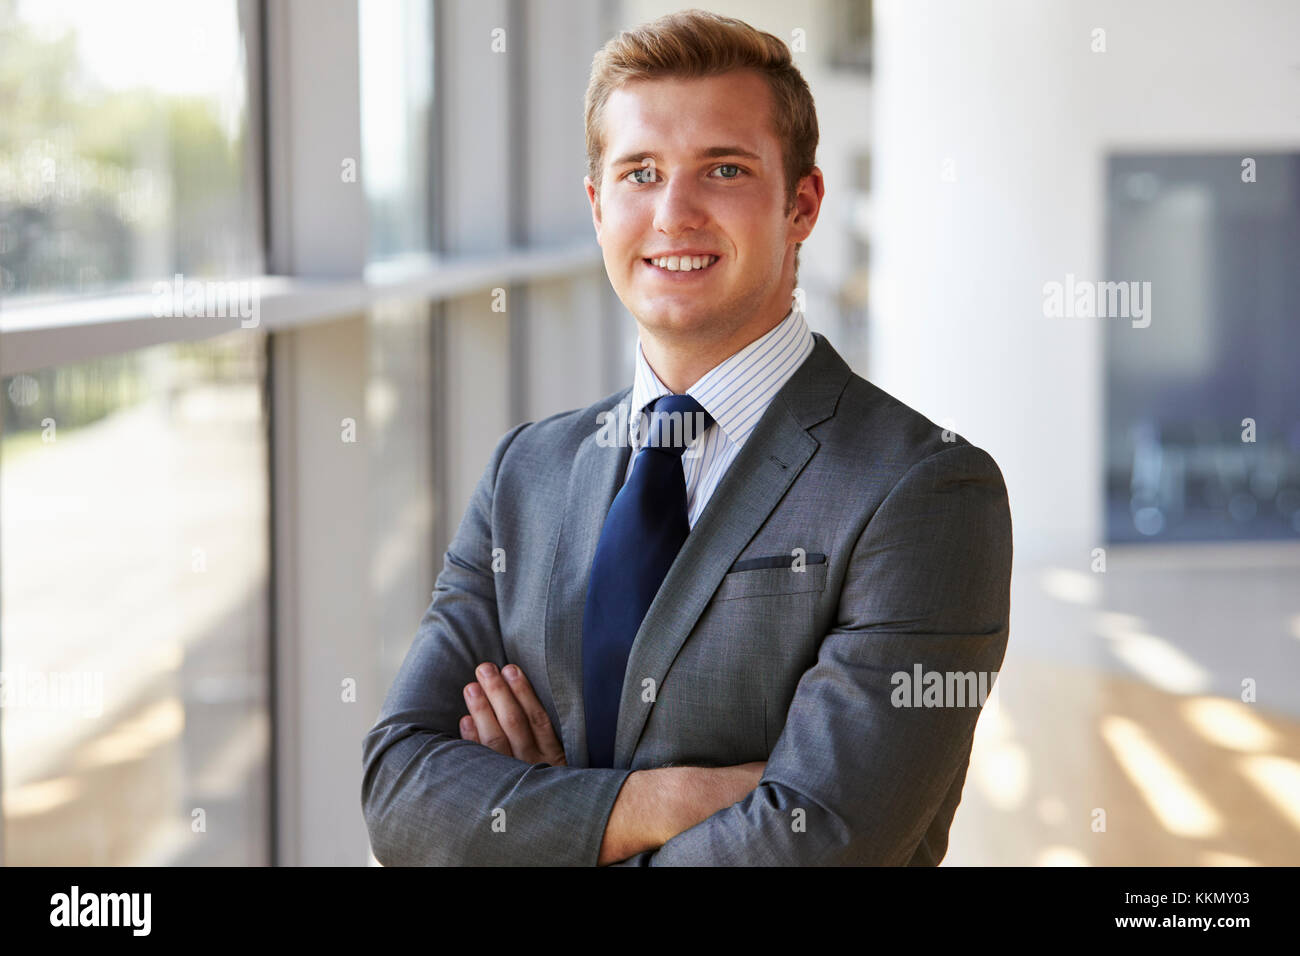 Portrait einer jungen lächelnd professionelle Menschen, Arme gekreuzt Stockfoto